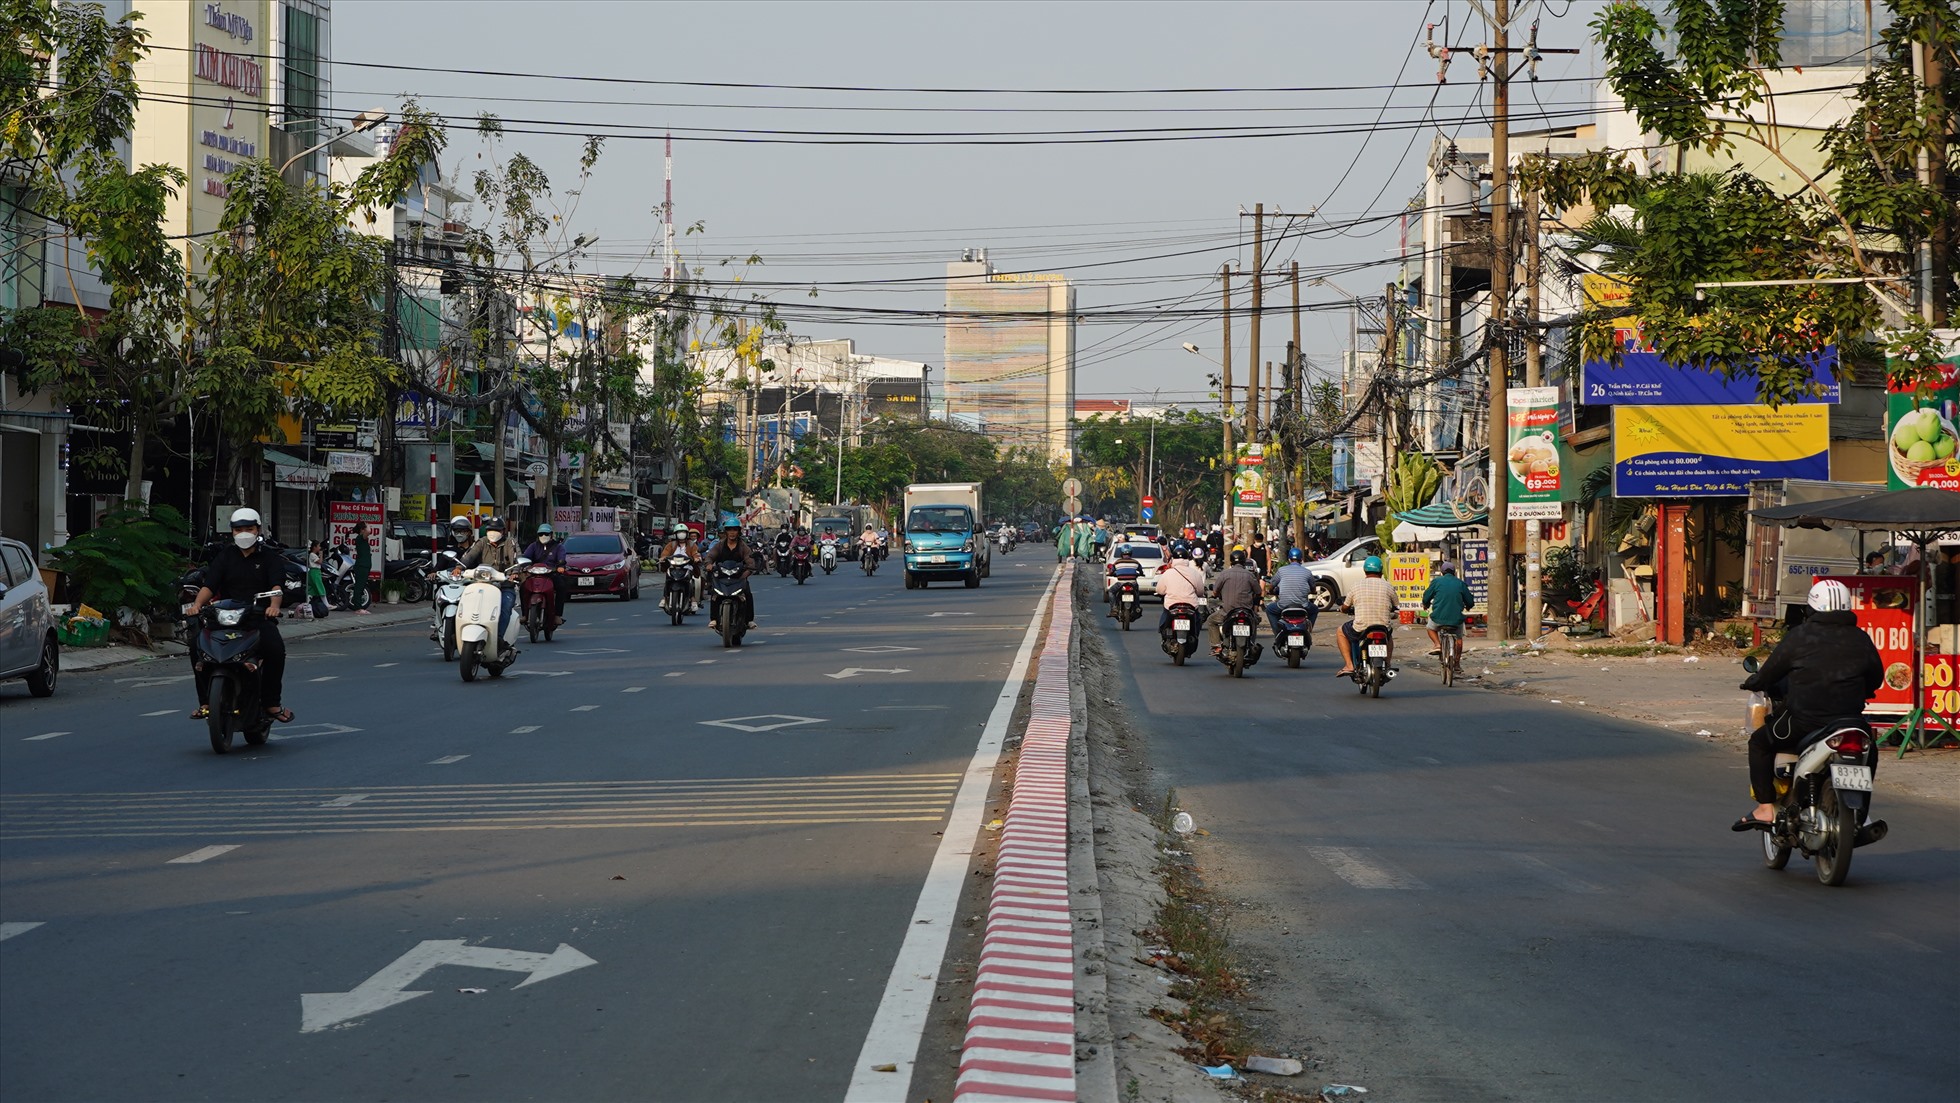 Ghi nhận của Lao Động, đường Trần Phú có chiều dài hơn 1km được UBND quận Ninh Kiều (TP. Cần Thơ) triển khai thực hiện dự án nâng cấp, mở rộng nhằm tạo thuận tiện cho lưu thông và chỉnh trang đô thị. Nhưng đến nay dự án này vẫn chưa được hoàn tất.